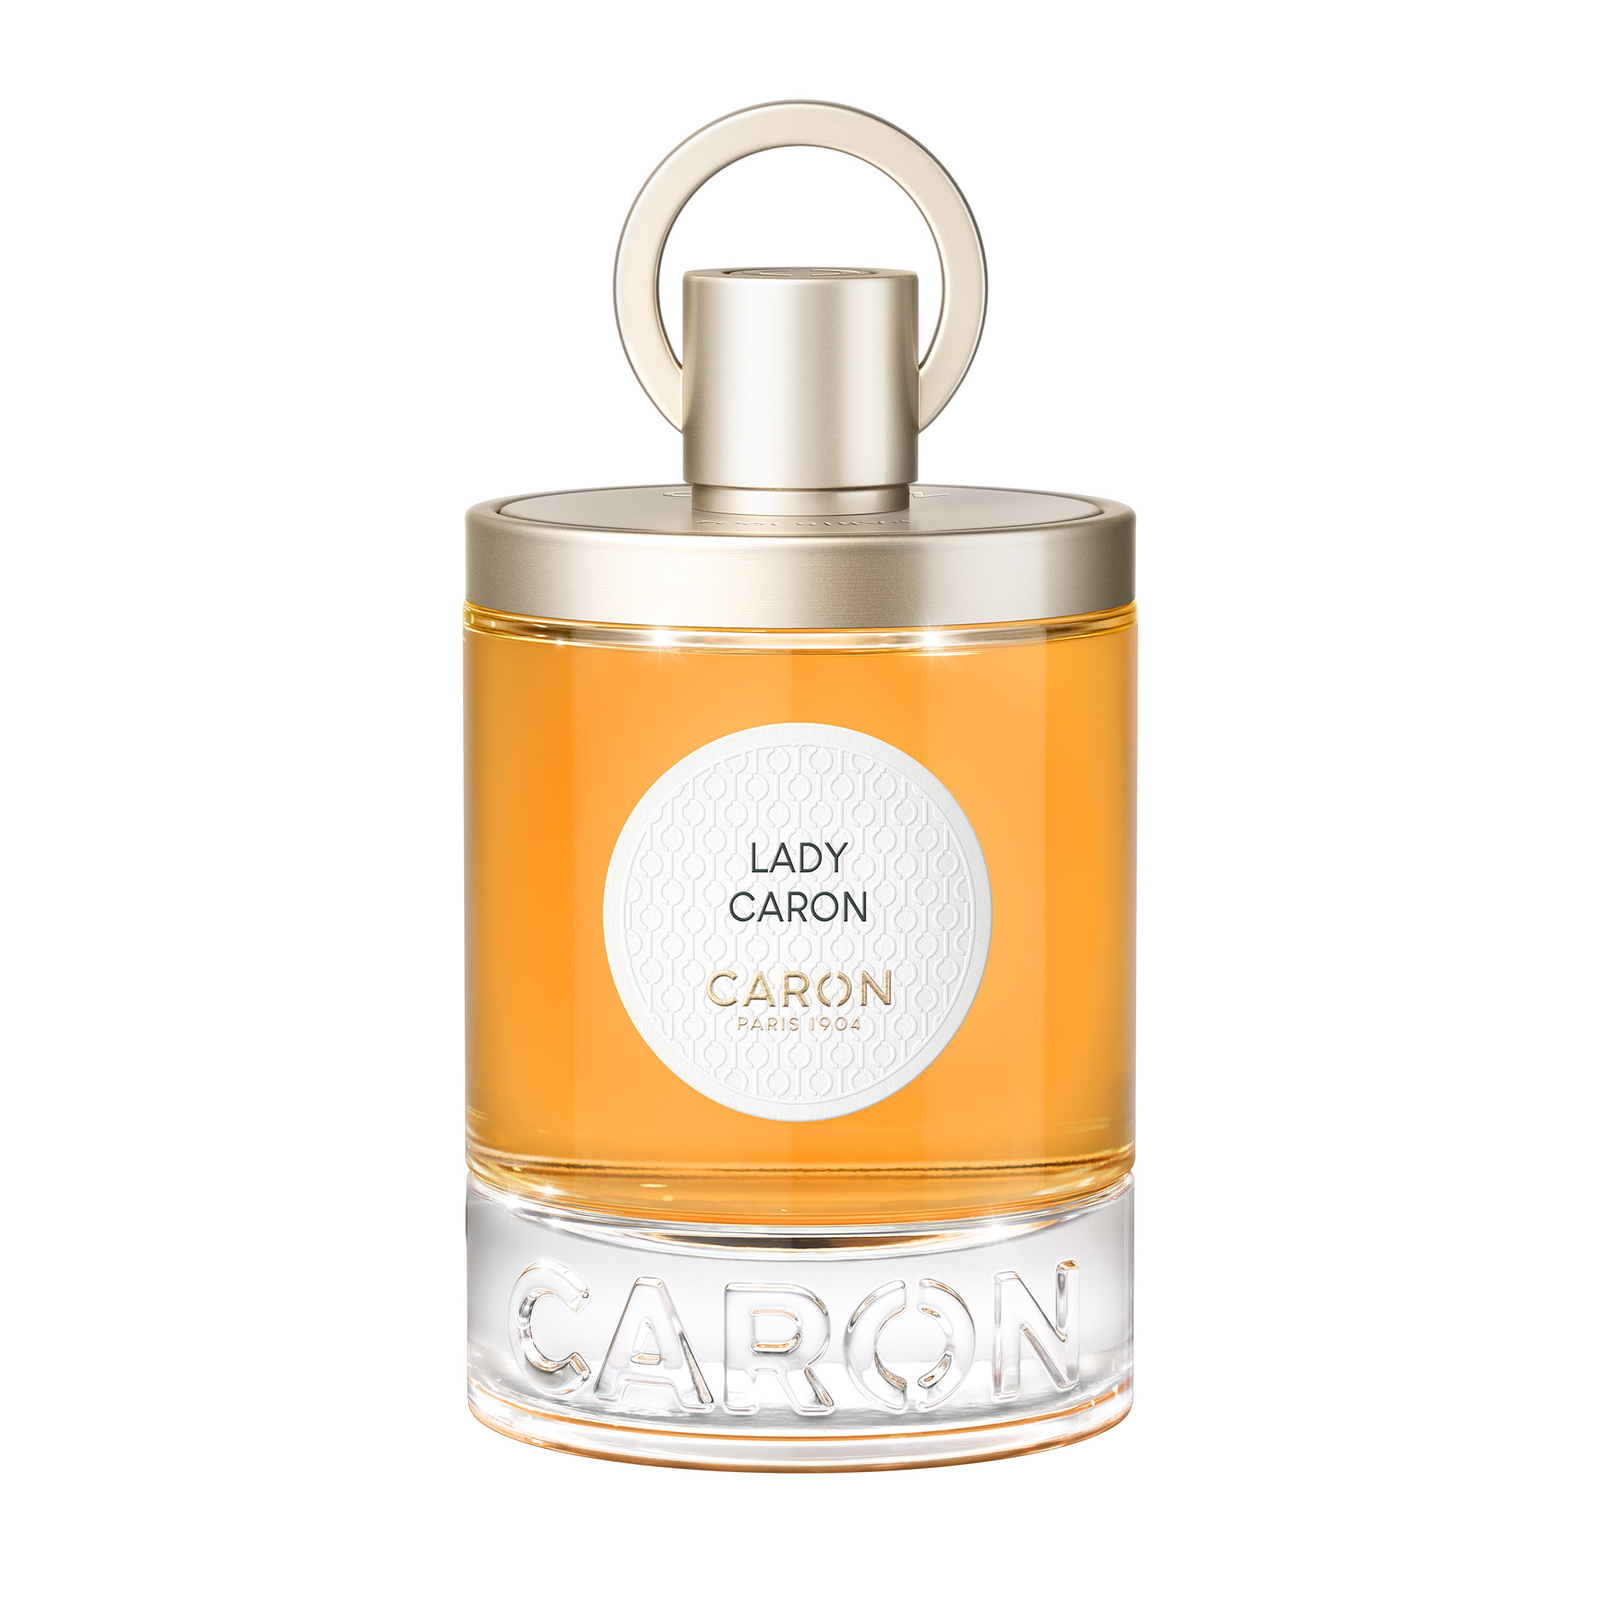 CARON Lady Caron EDP 100ml Refillable